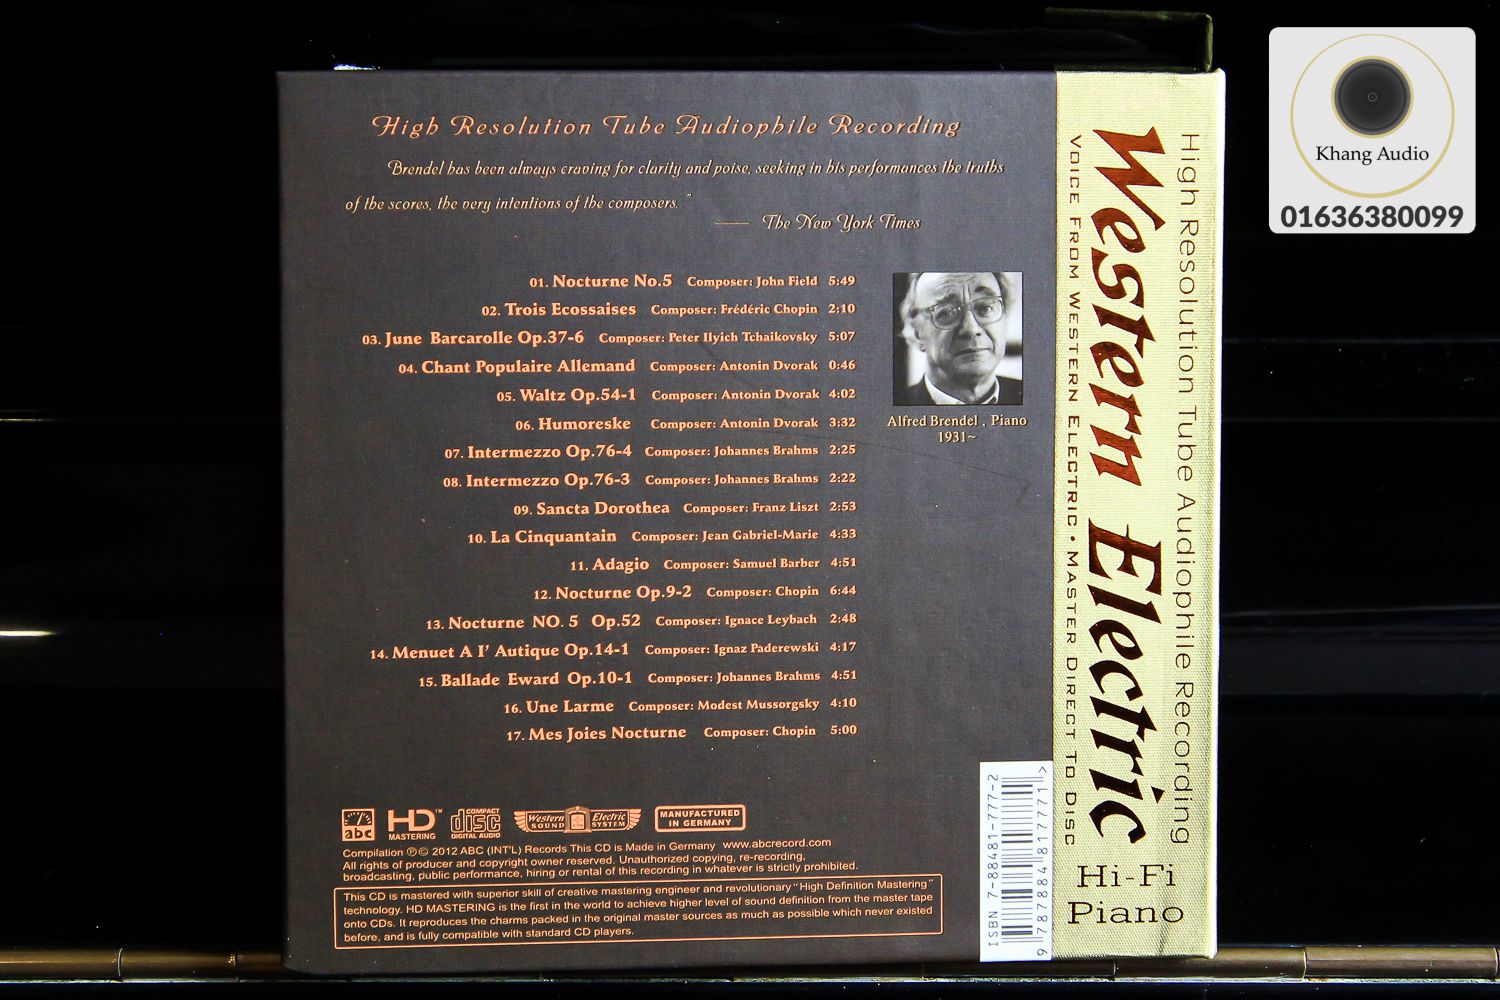 Western Electric Sound - 1967 Hi-Fi Piano Khang Audio 0336380099